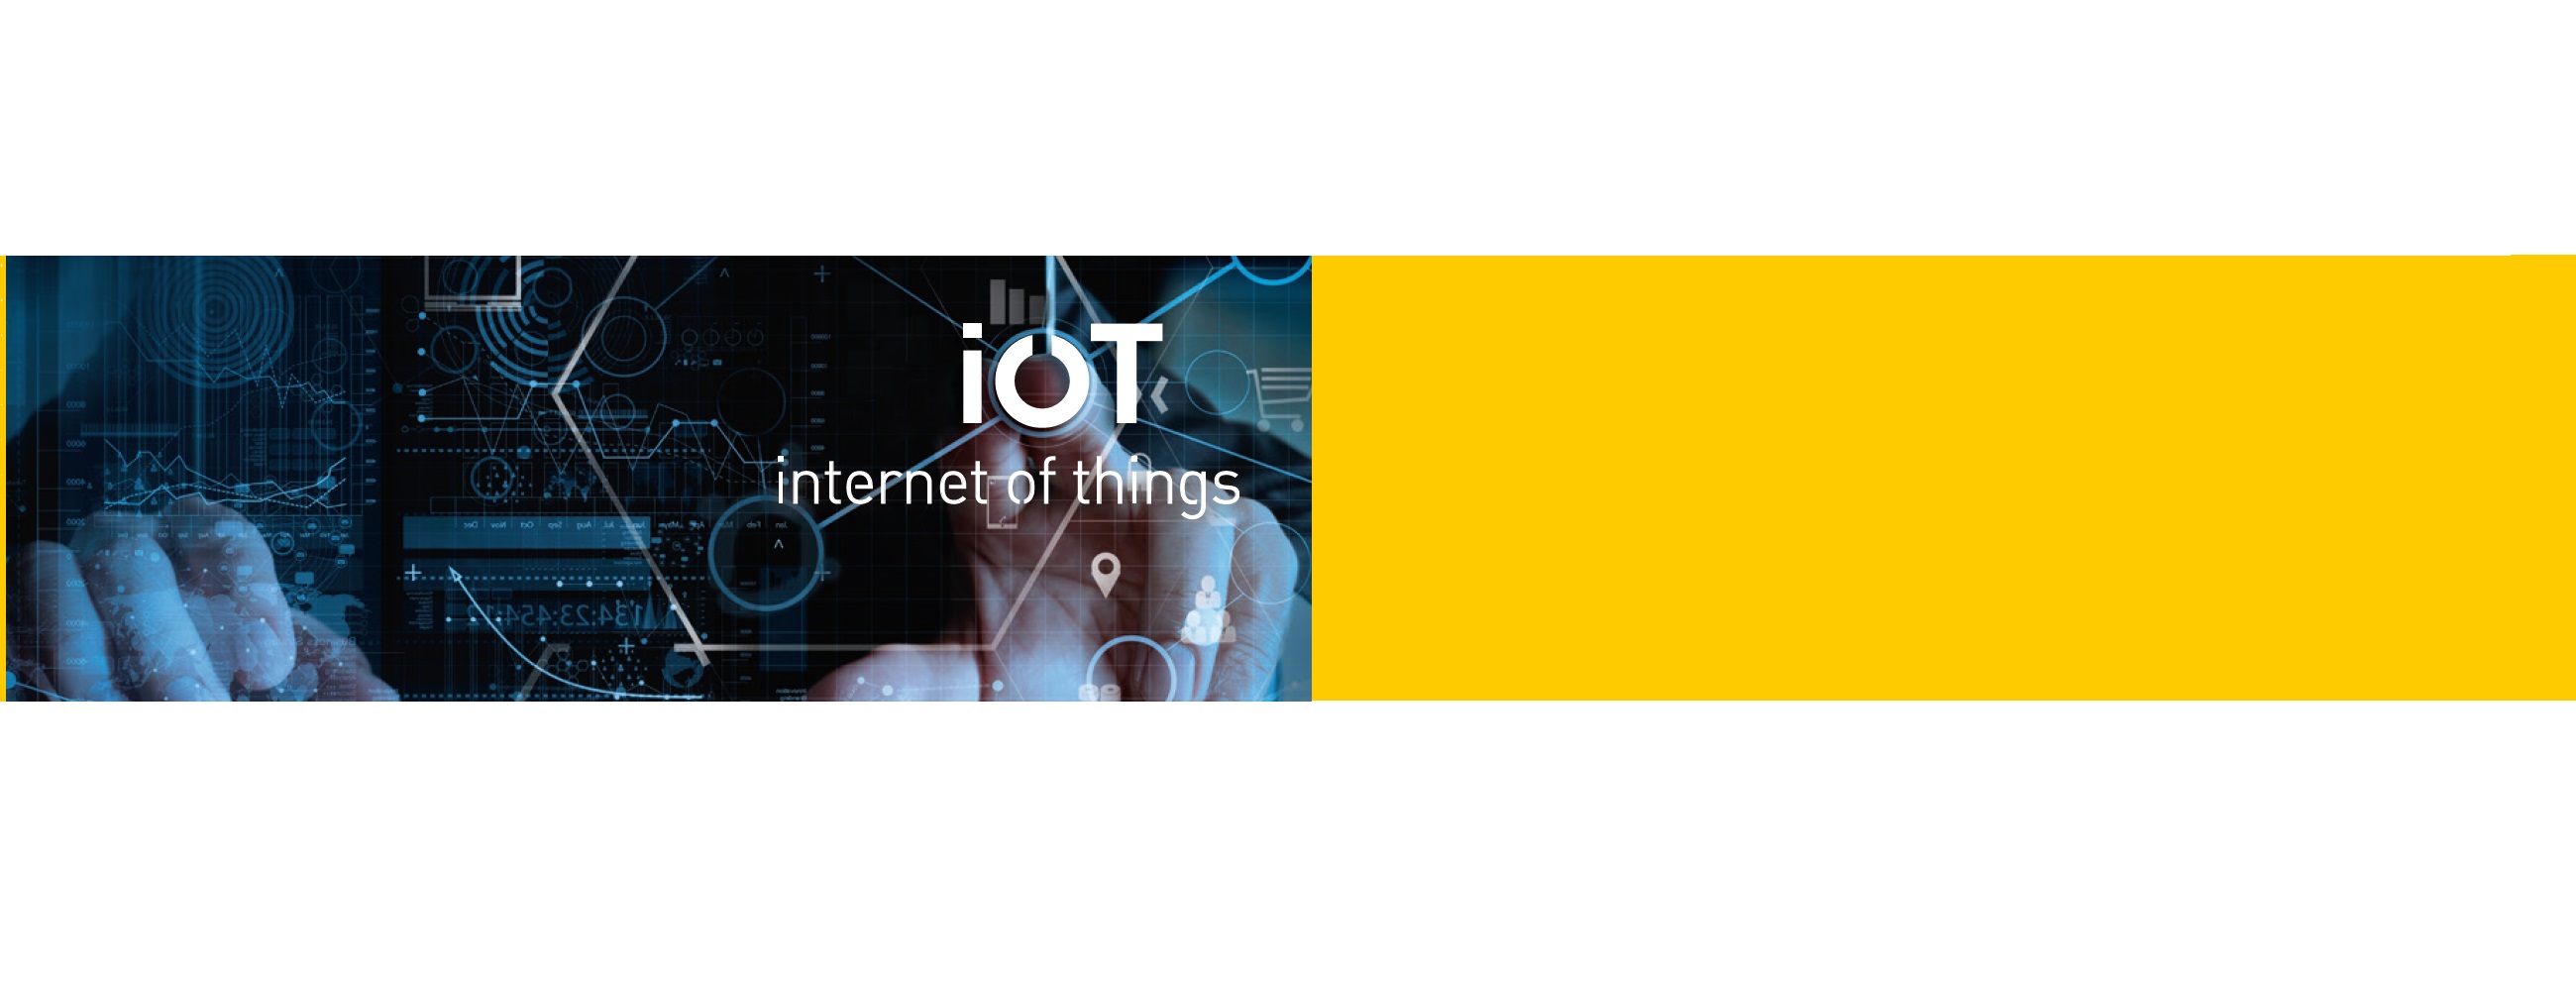 Ouverture de la formation IoT (Internet of Things) de Polytech